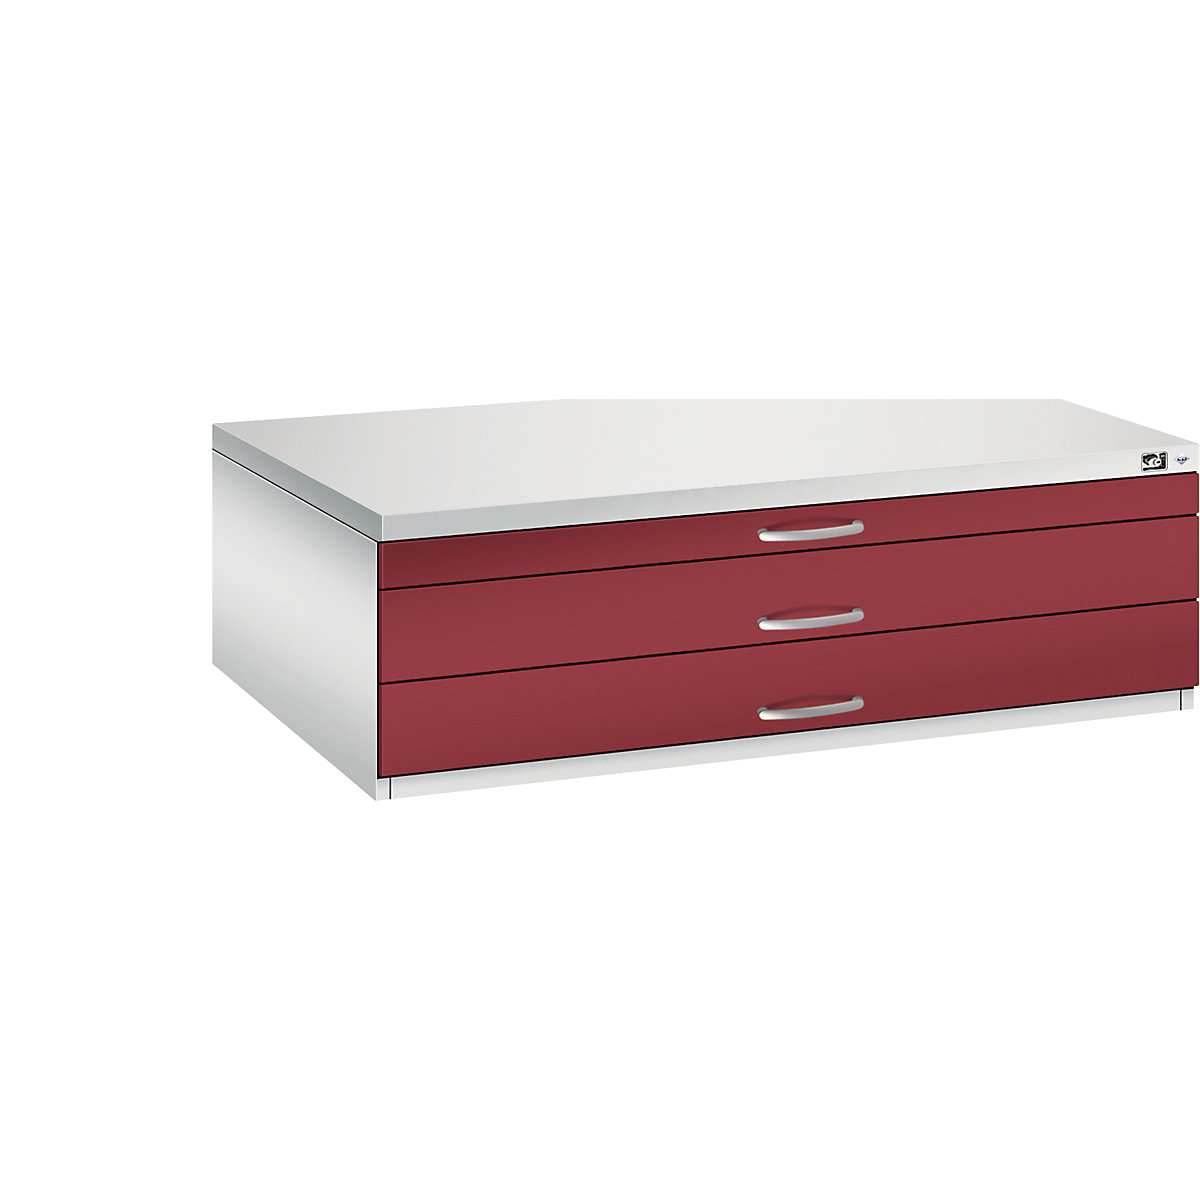 Archivio per disegni – C+P, UNI A0, 3 cassetti, altezza 420 mm, grigio chiaro / rosso rubino-21